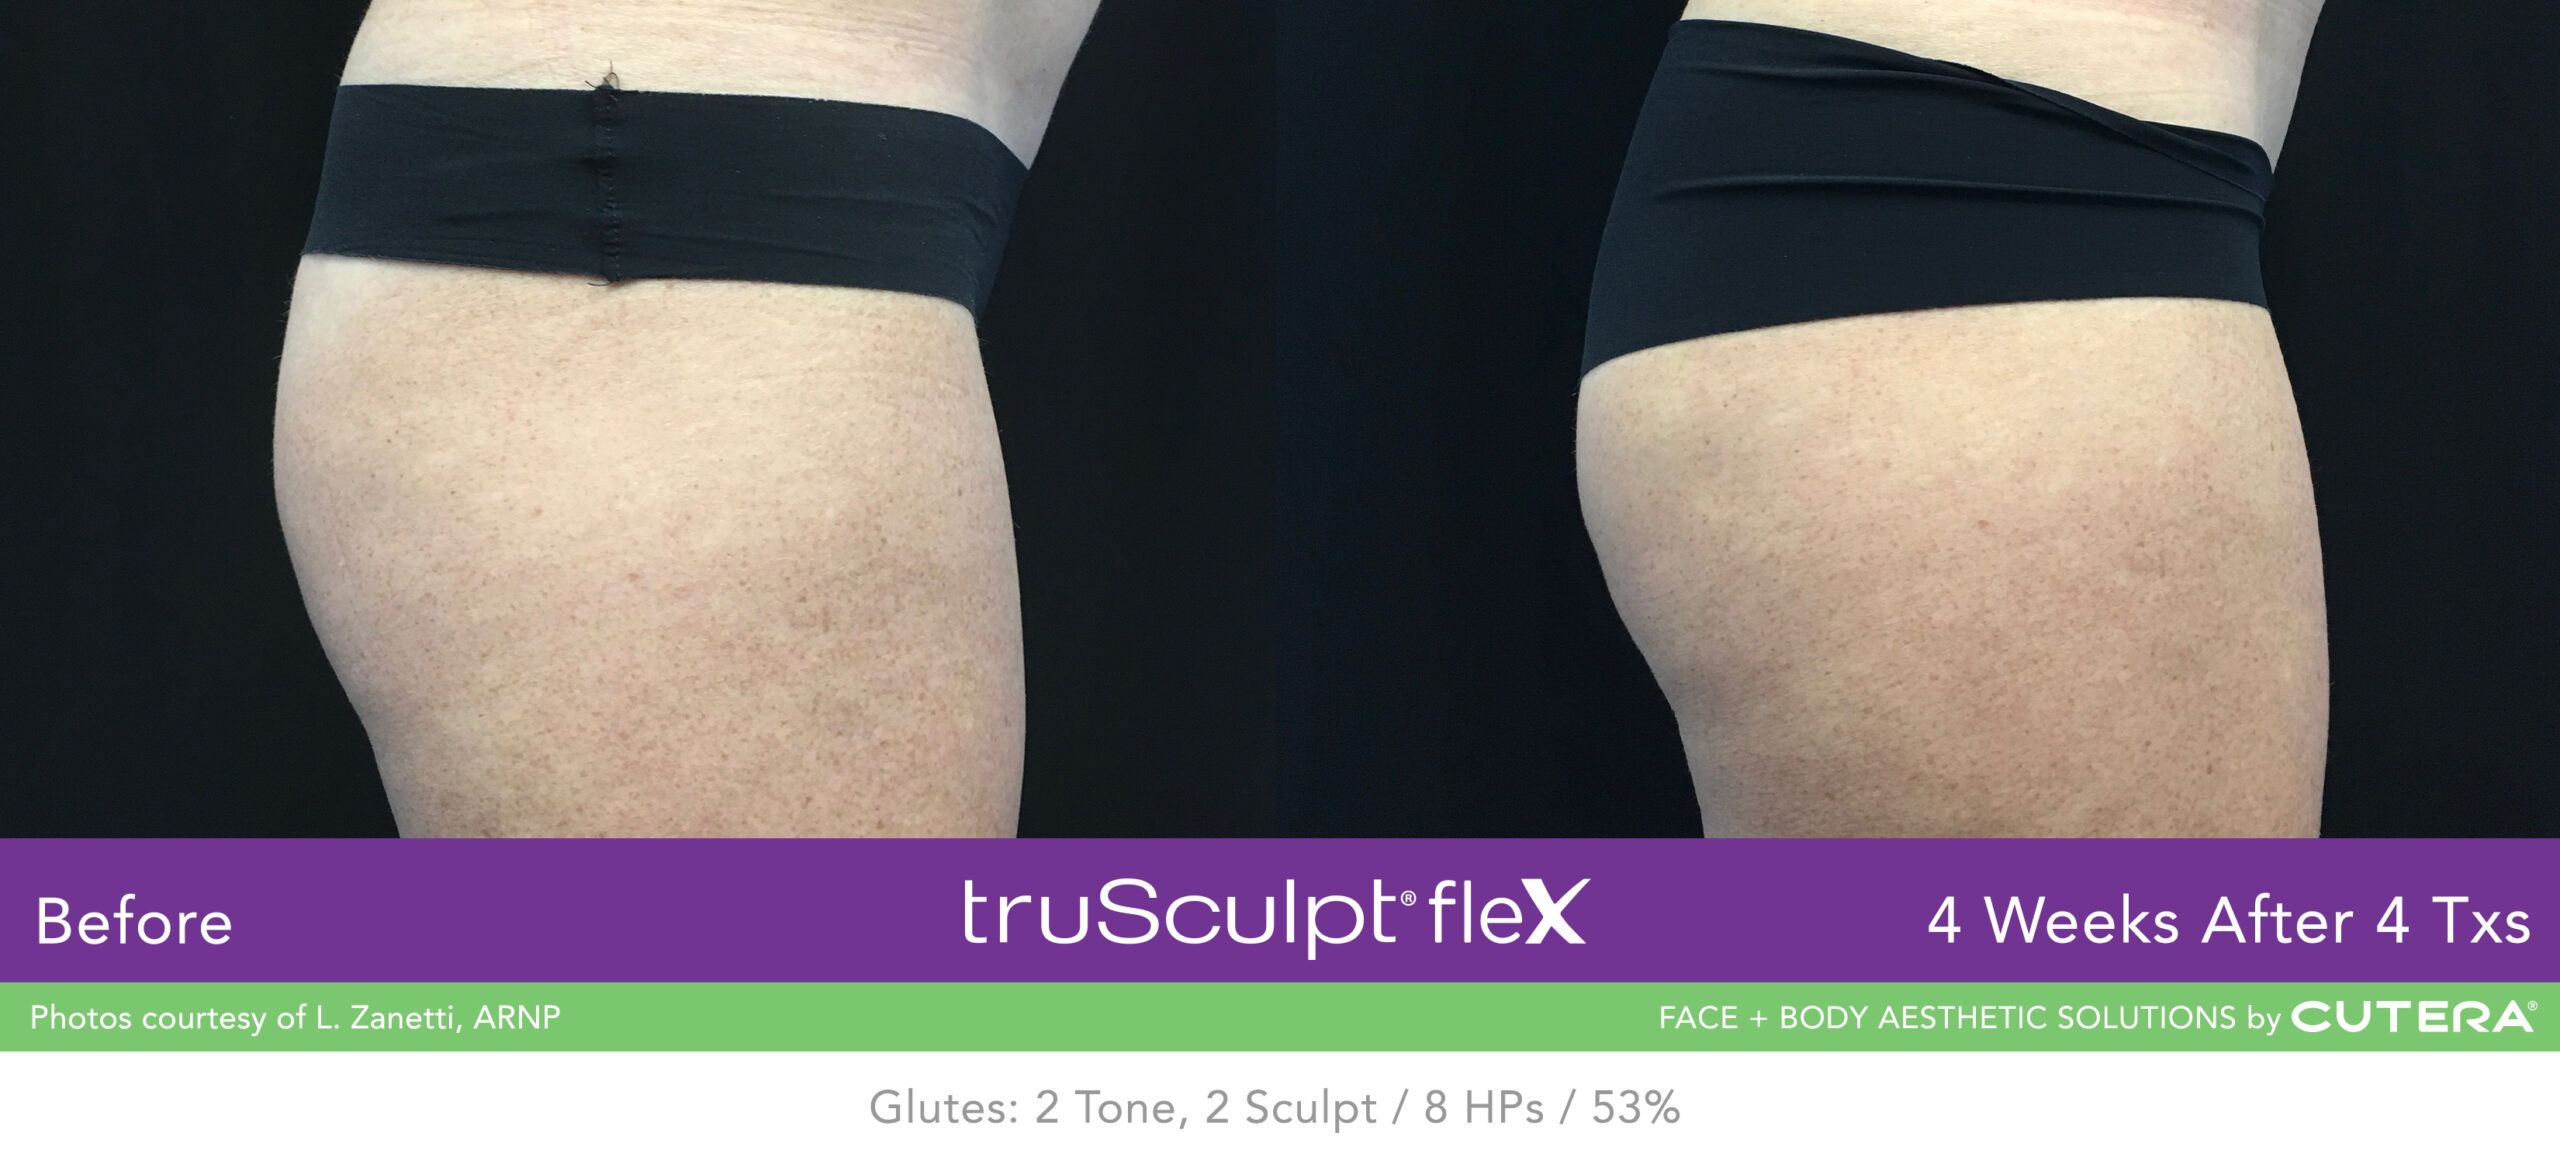 Trusculpt Flex – Before & After – Buttocks 4